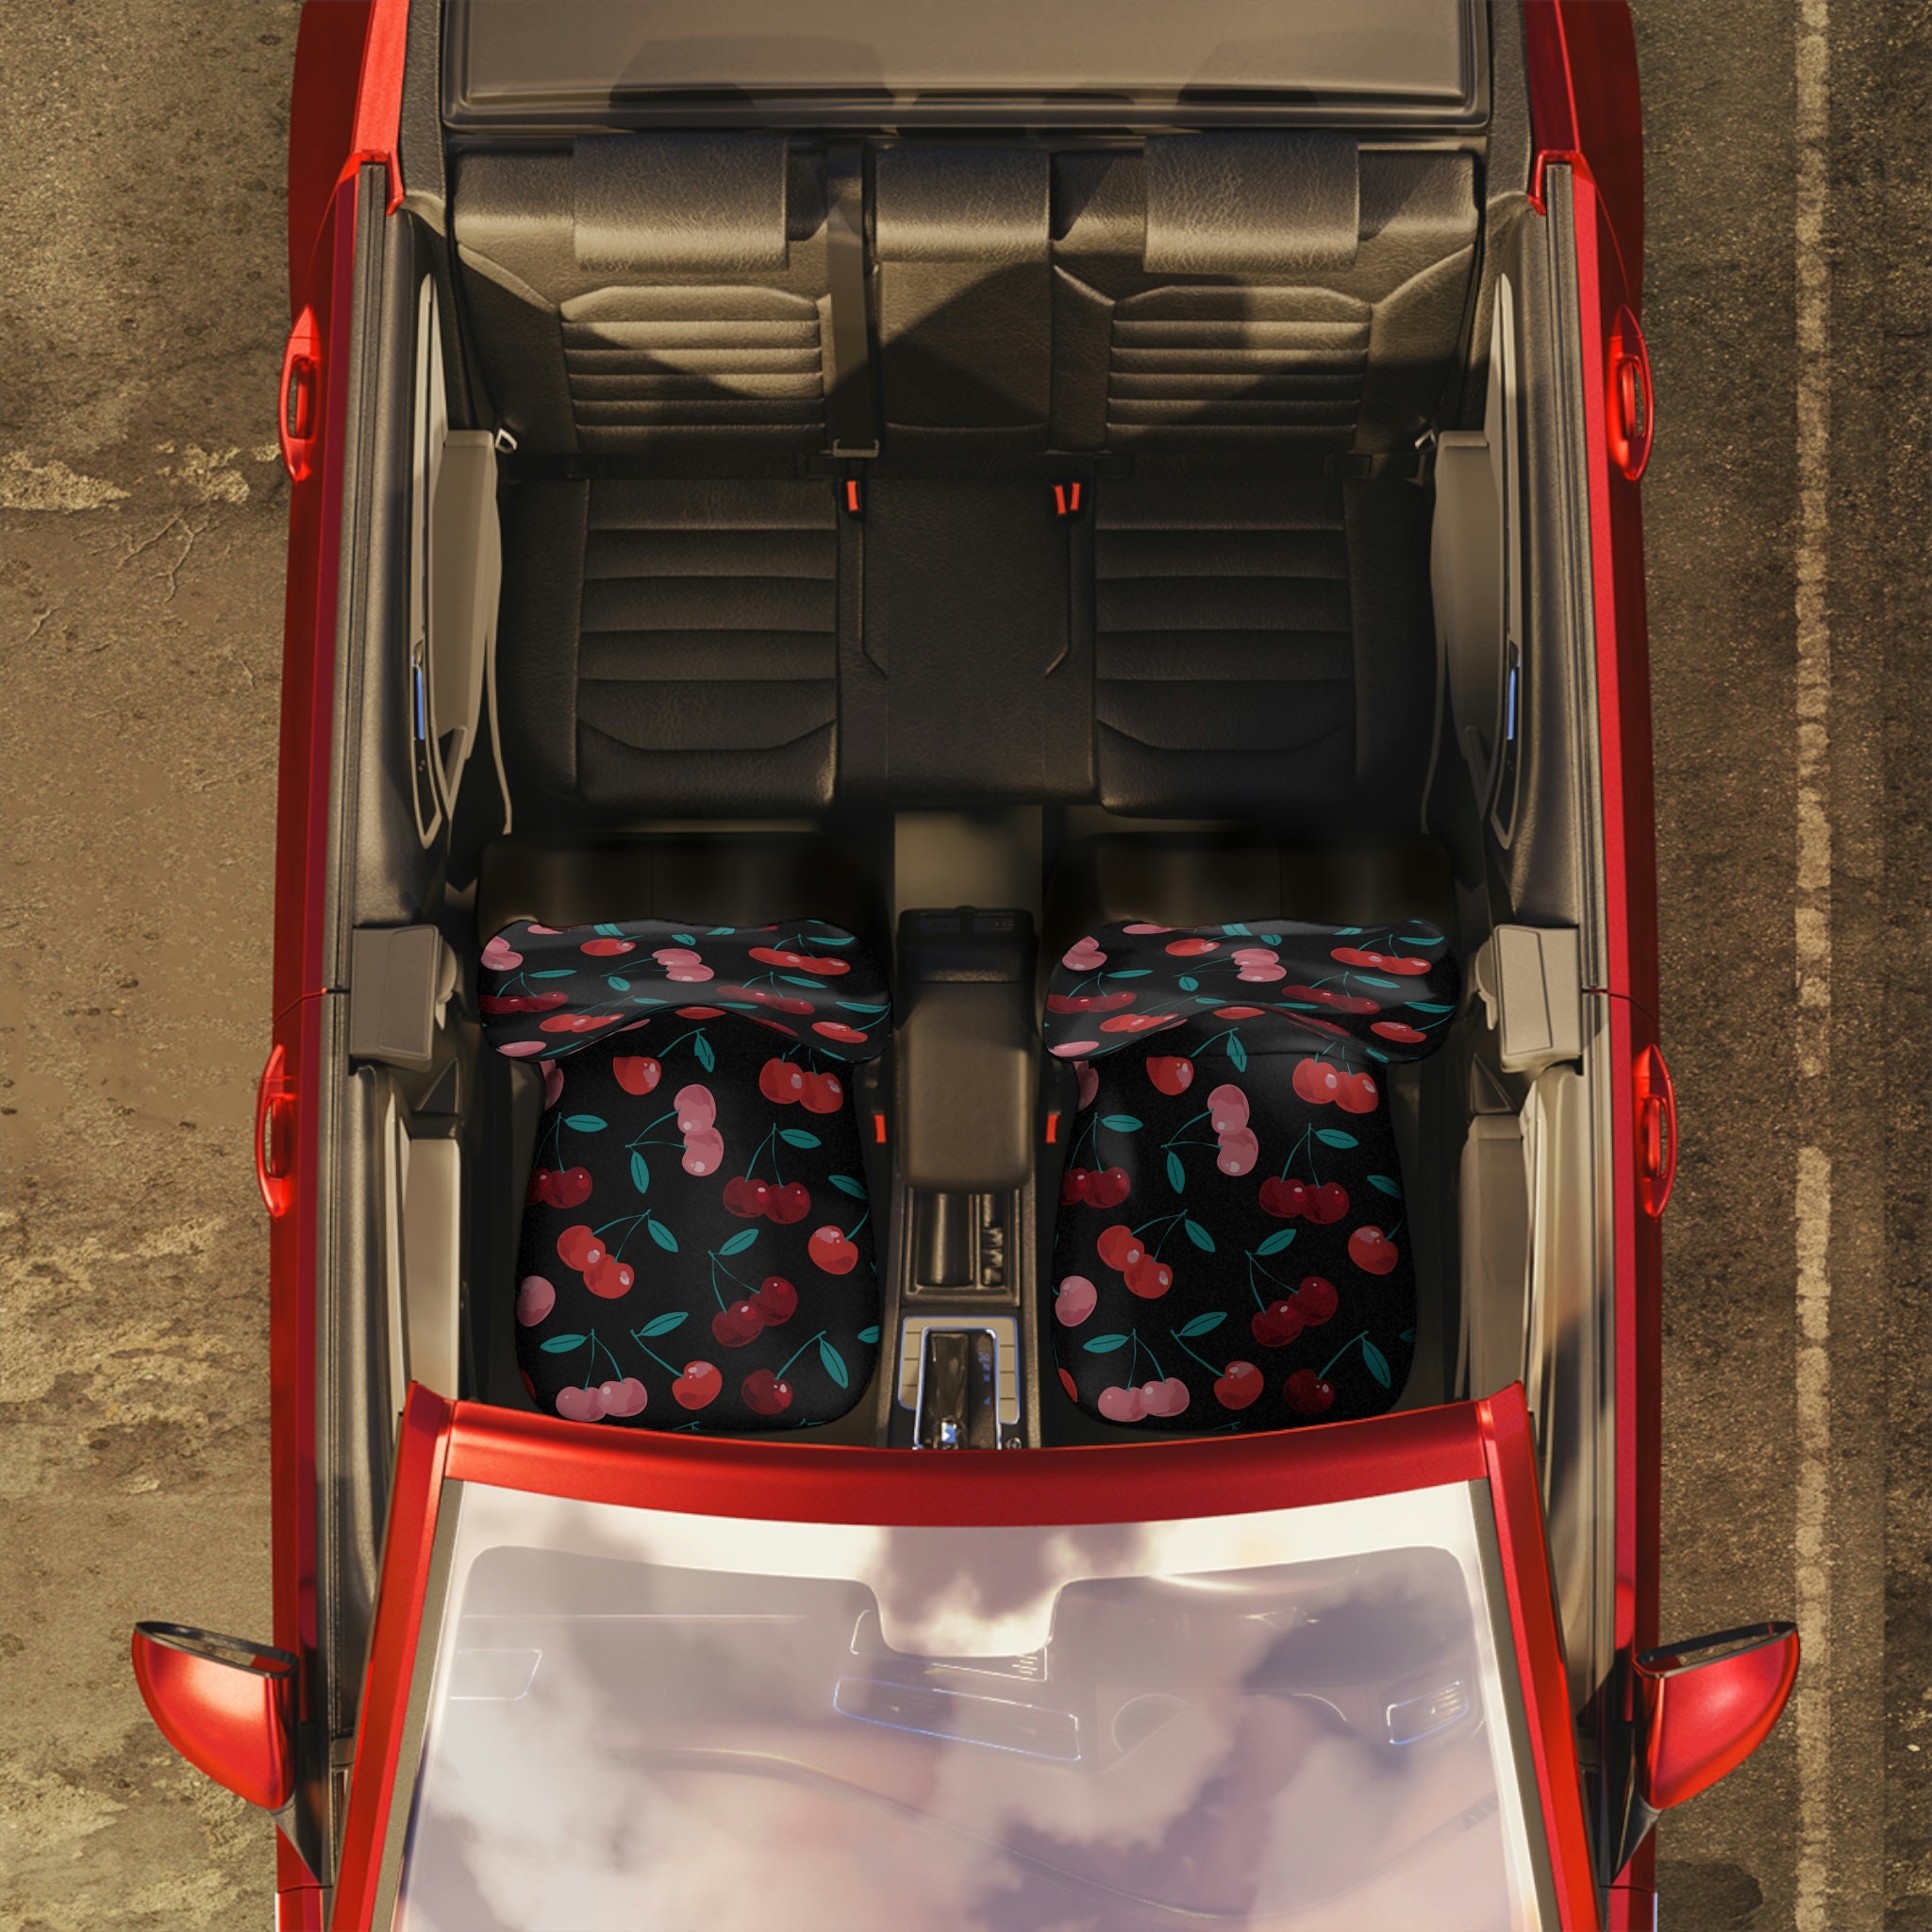 Black Cherries Car Seat Covers